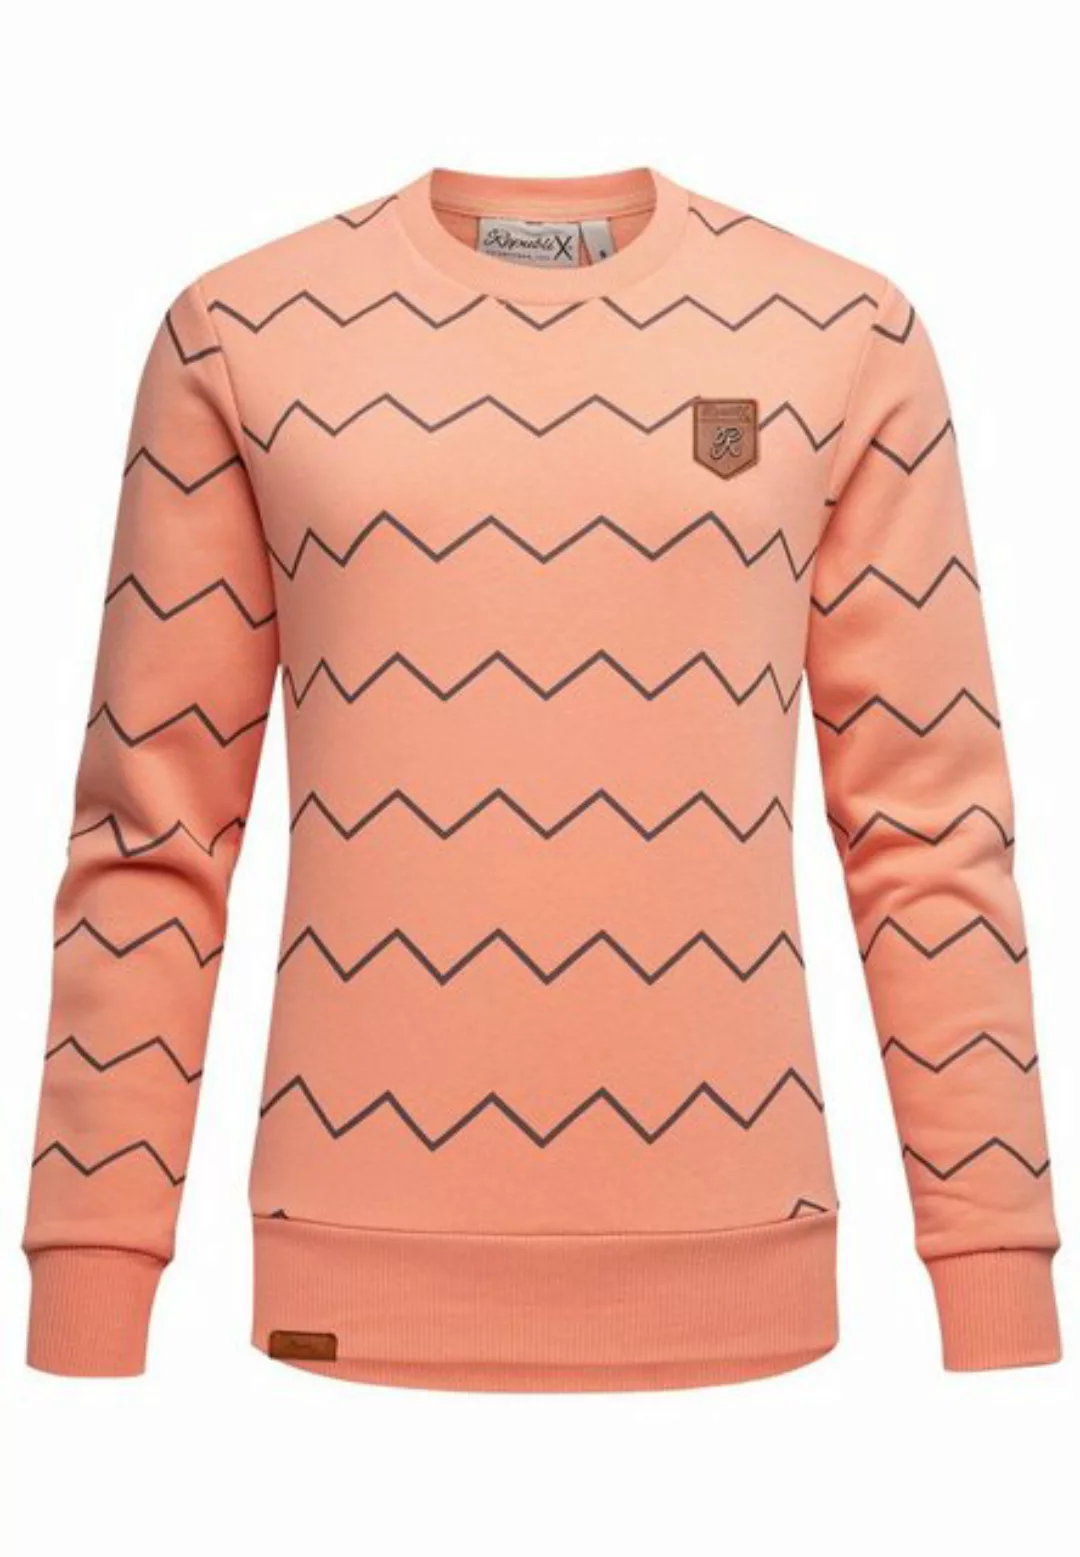 REPUBLIX Sweatshirt KEIRA Damen Kapuzenpullover Print Sweatjacke Pullover H günstig online kaufen